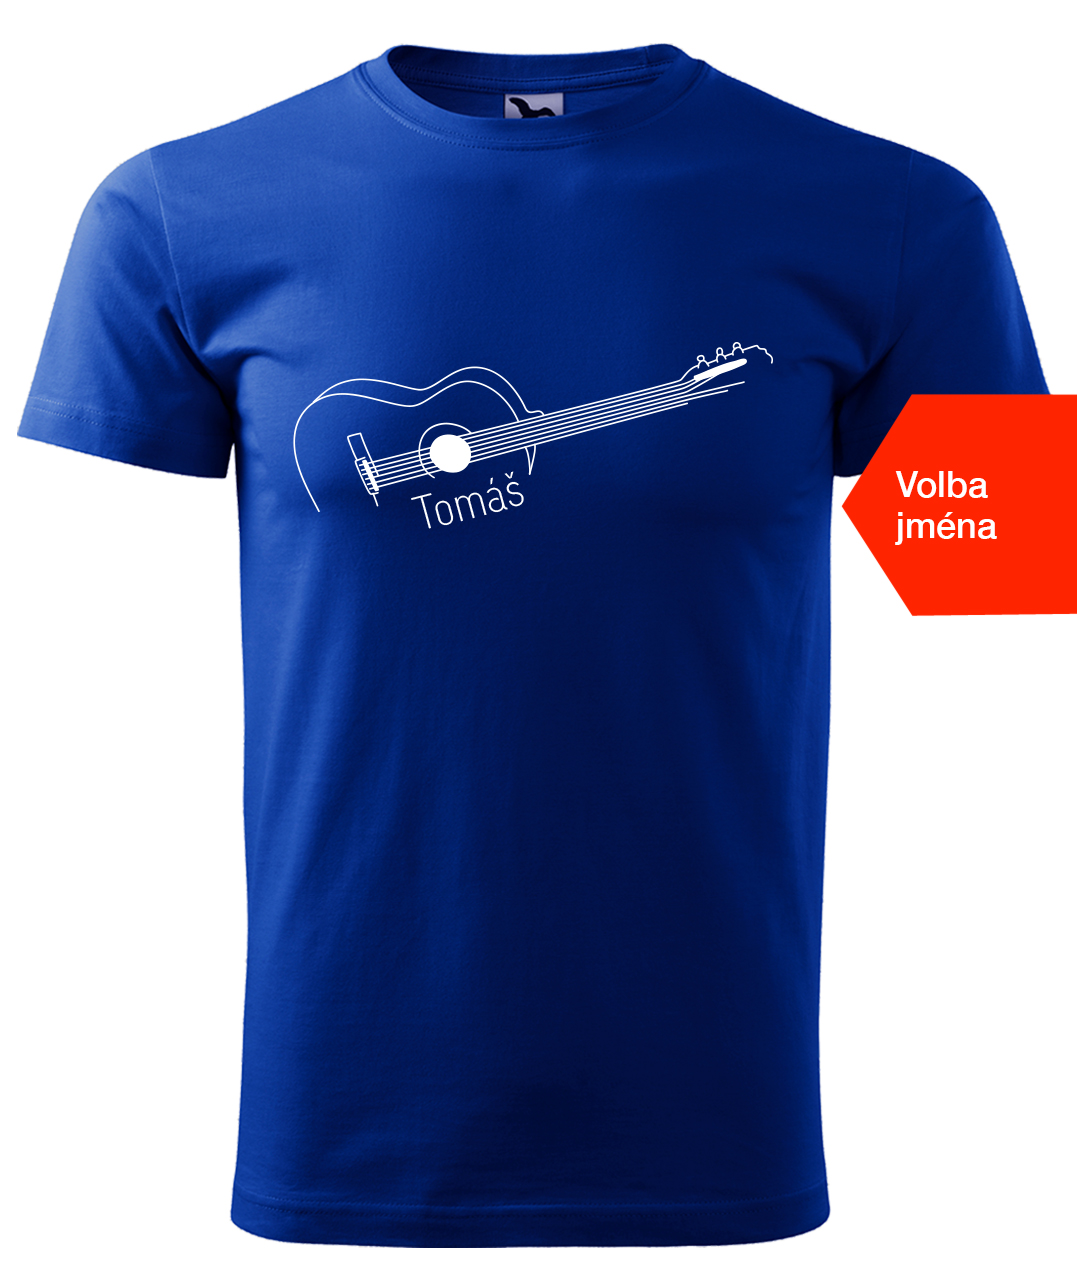 Dětské tričko s kytarou se jménem - Stylizovaná kytara Velikost: 6 let / 122 cm, Barva: Královská modrá (05), Délka rukávu: Krátký rukáv